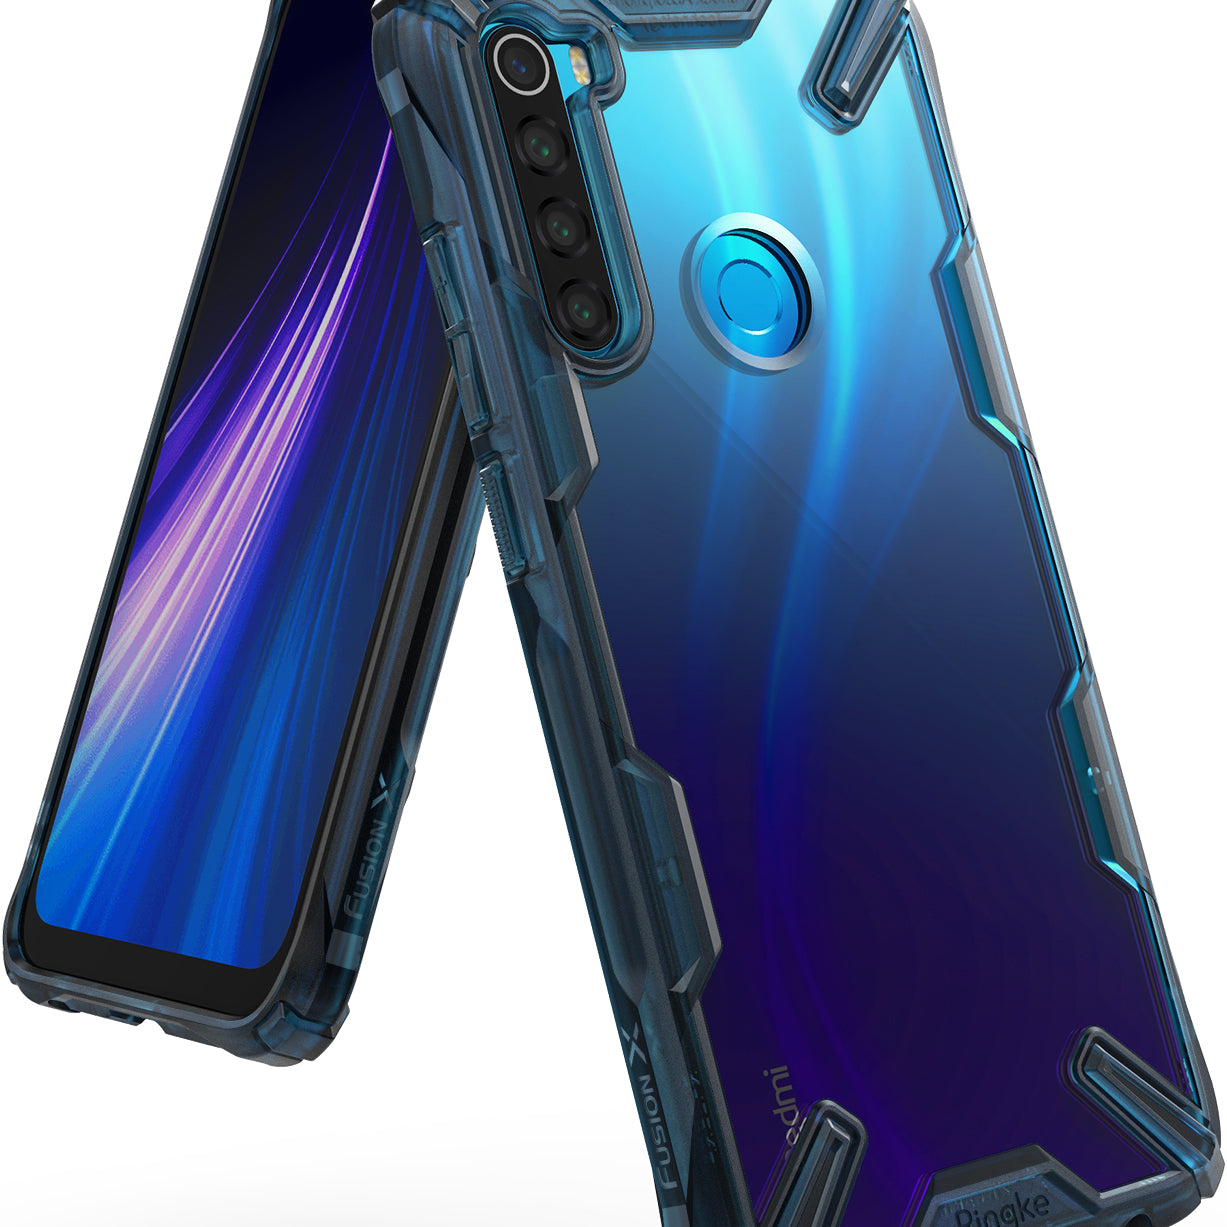 Ringke FUSION-X Design Case for Xiaomi Redmi Note 8 (2019) - space blue